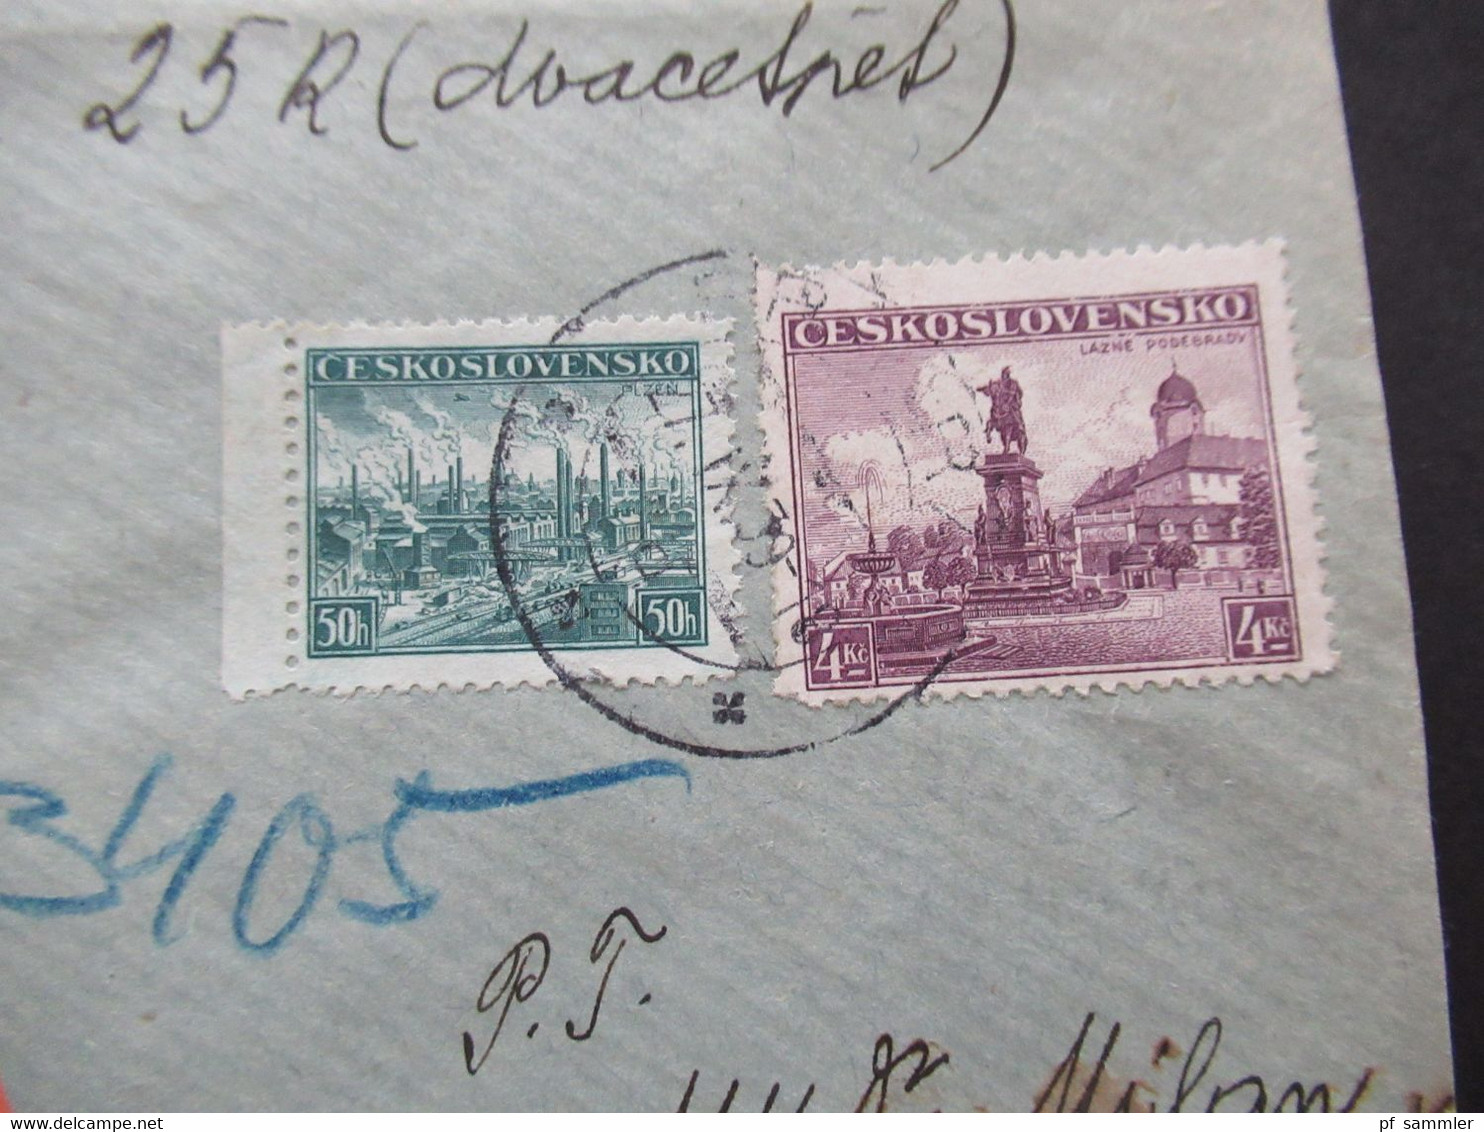 CSSR 27.9.1939 Protektorat Mitläufer Böhmen Und Mähren Einschreiben Dobirka Remboursement Pribram - Prag - Lettres & Documents